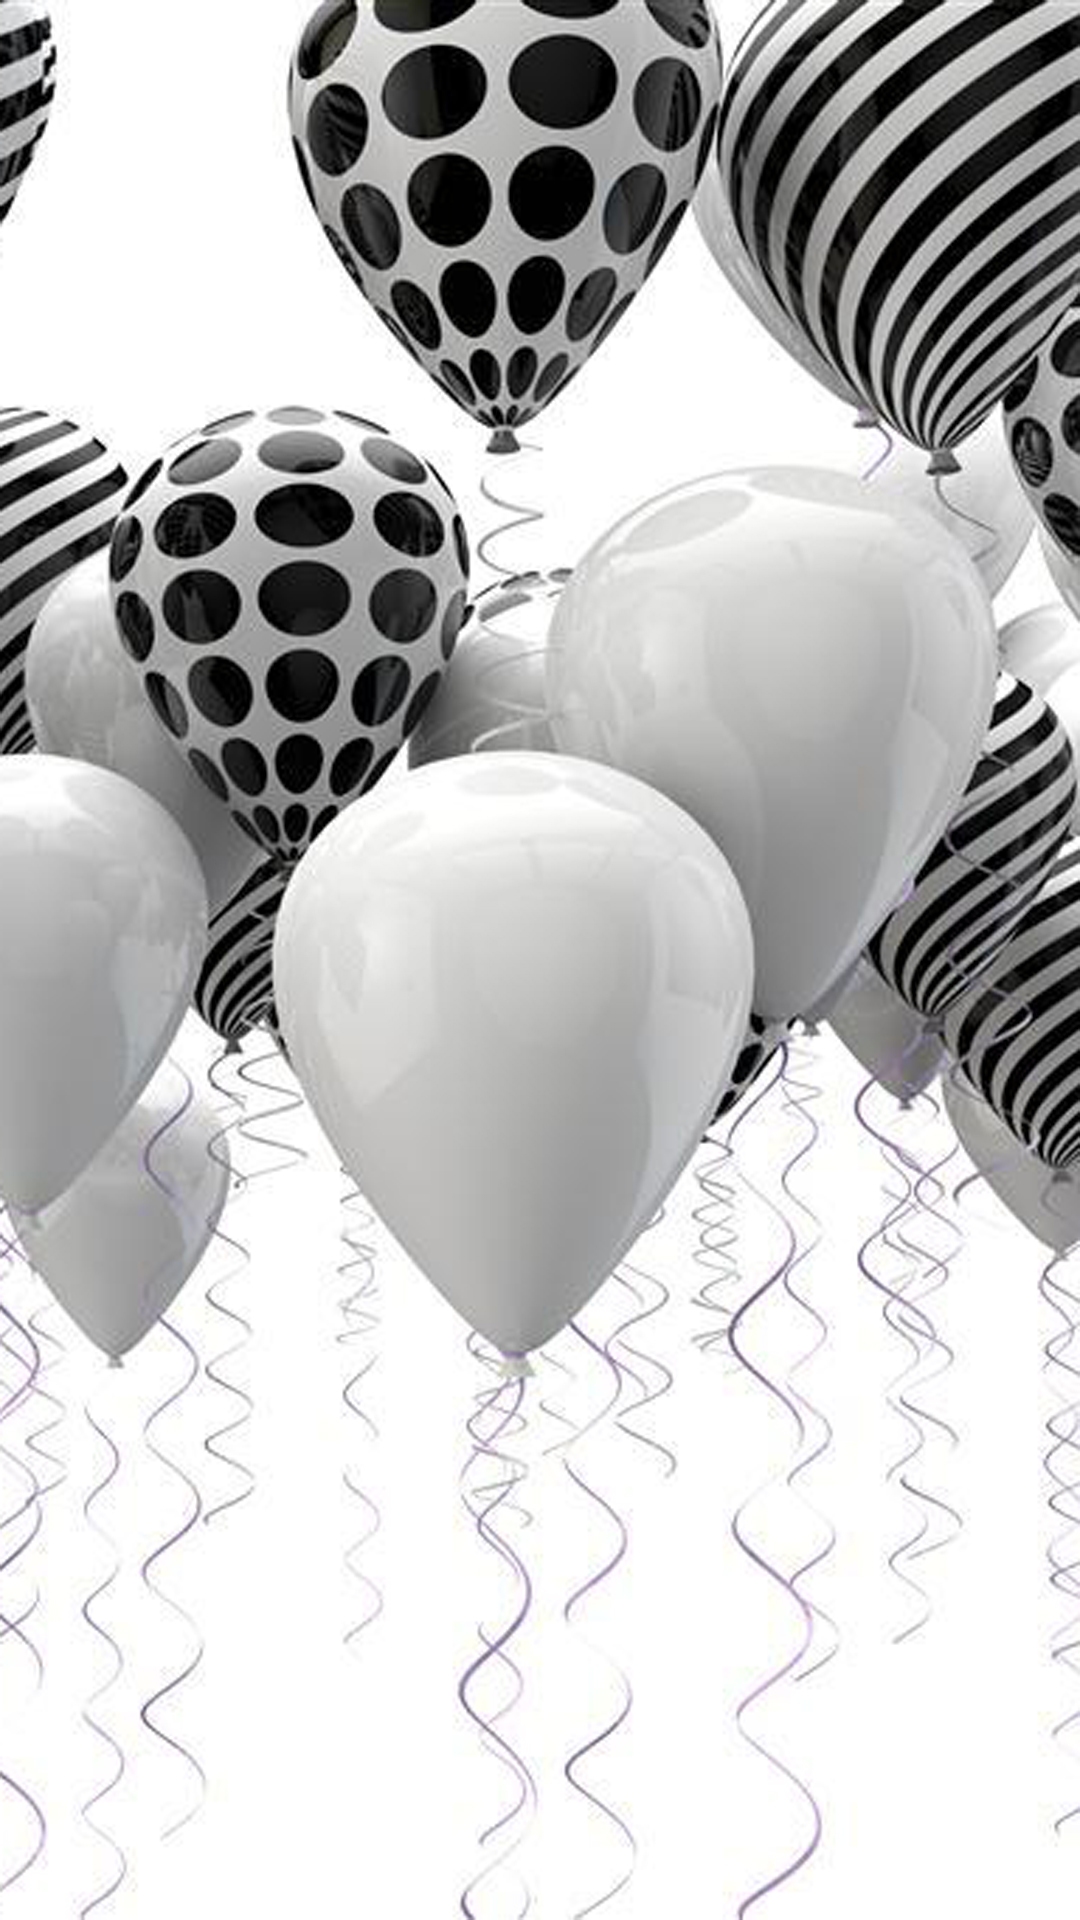 juicywallpapers,palloncino,bianco e nero,rifornimento del partito,cuore,fotografia in bianco e nero